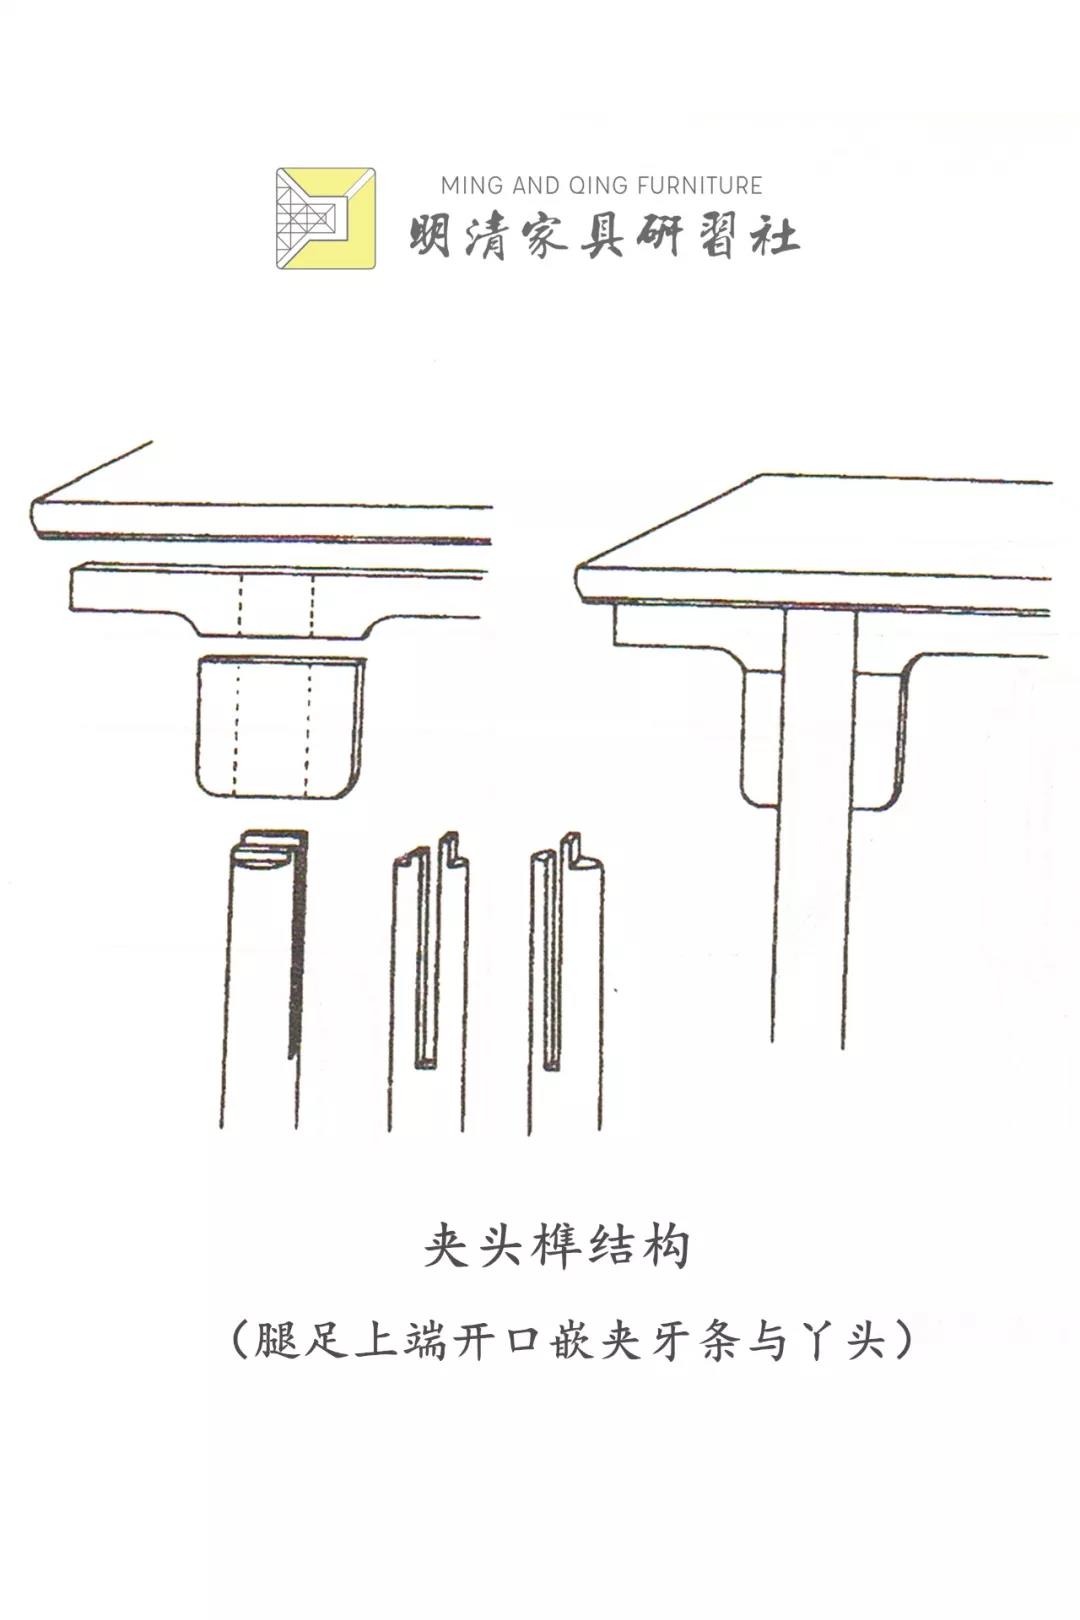 桌腿榫卯结构图解图片